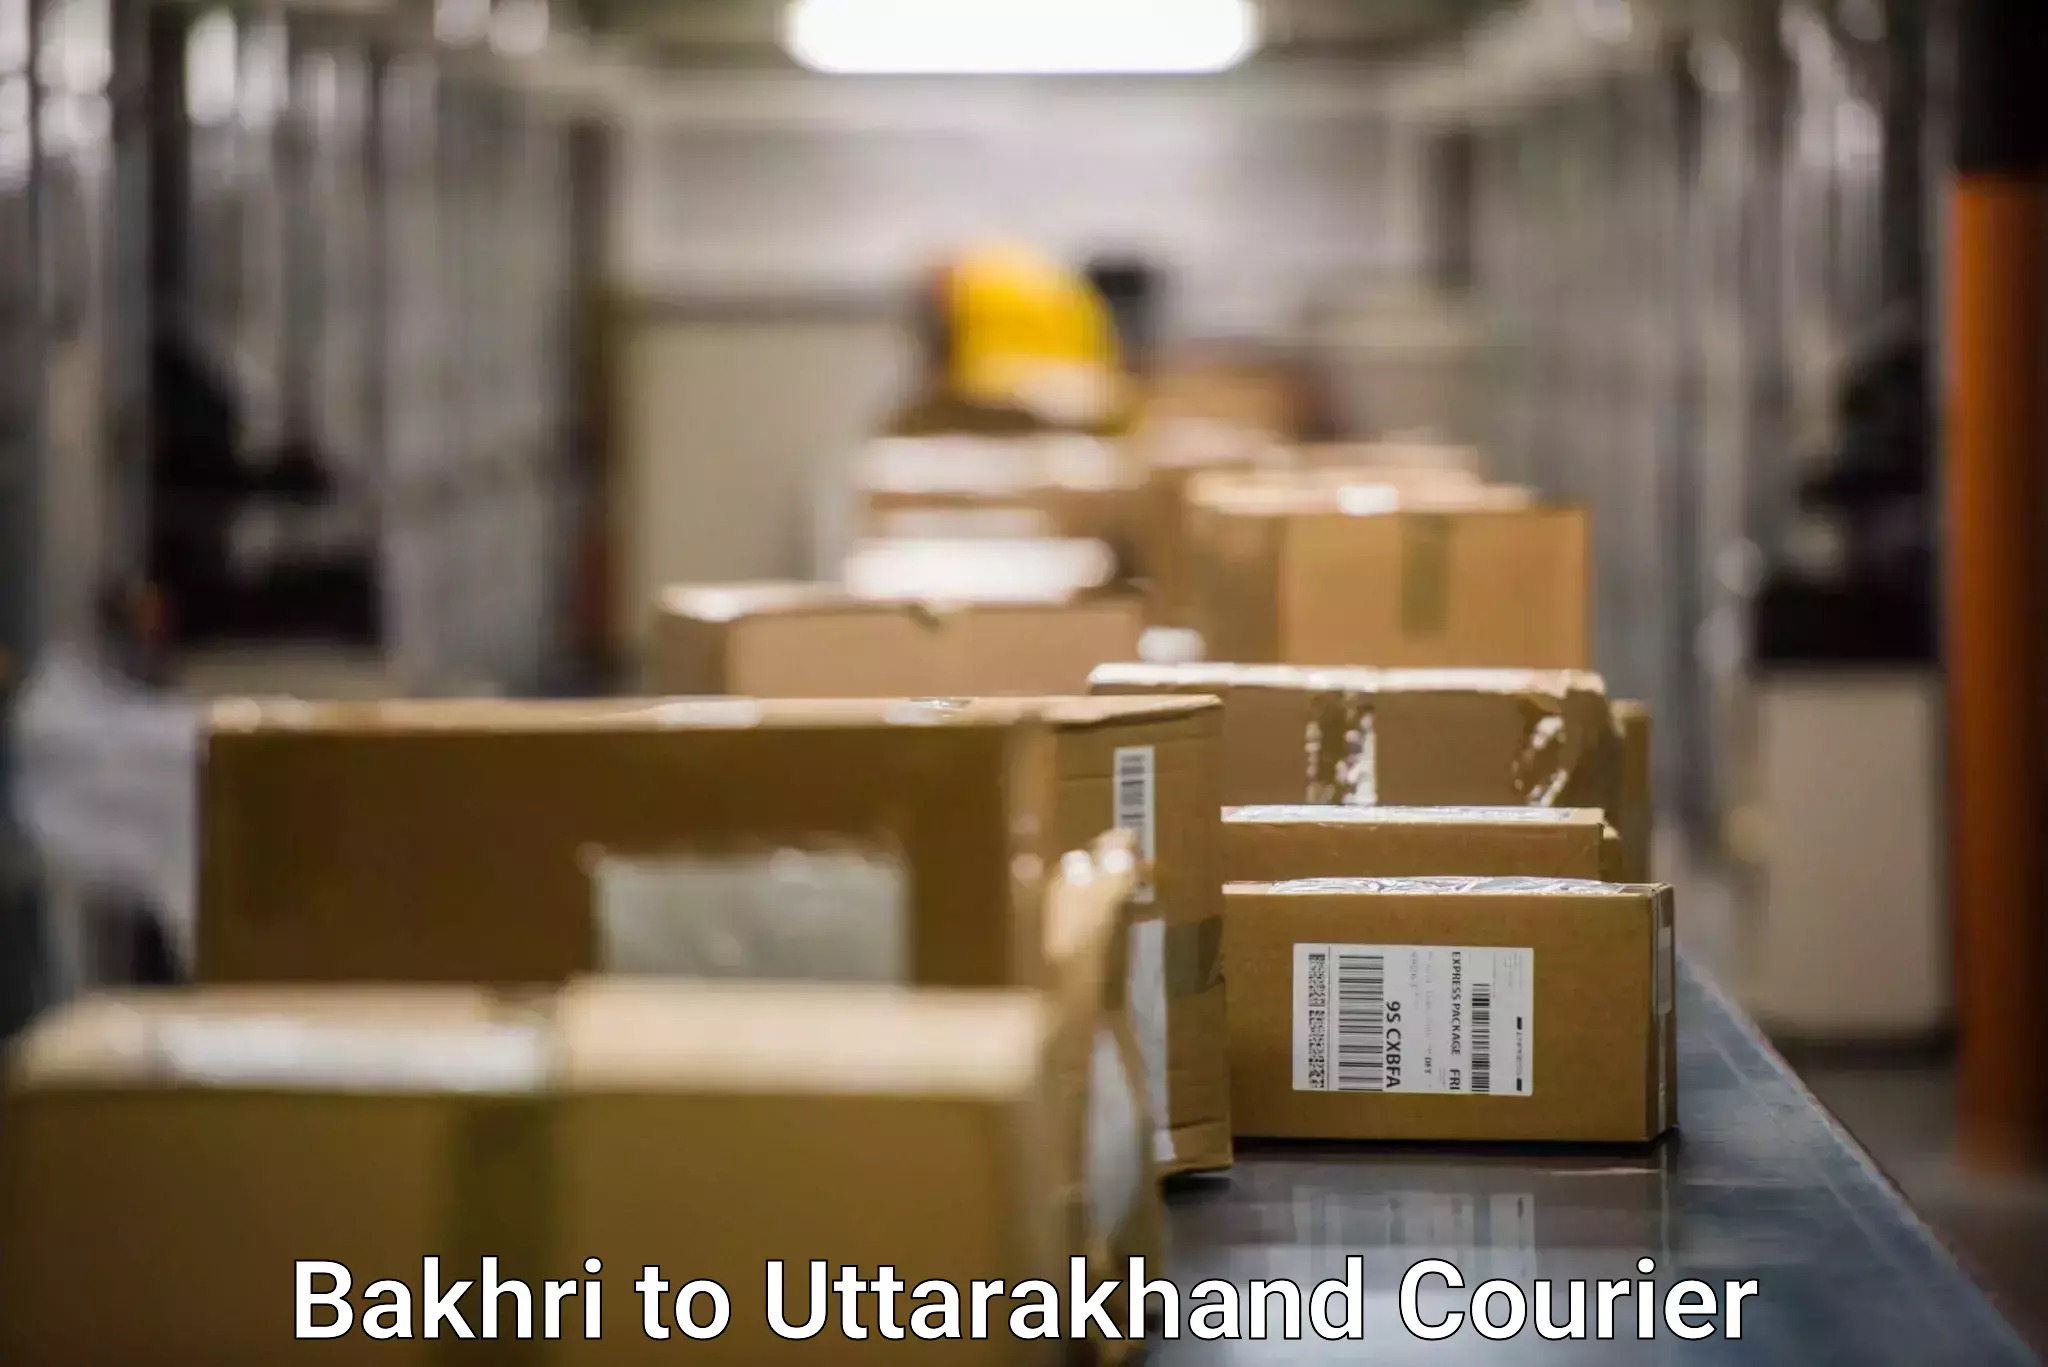 Modern delivery methods Bakhri to Uttarakhand